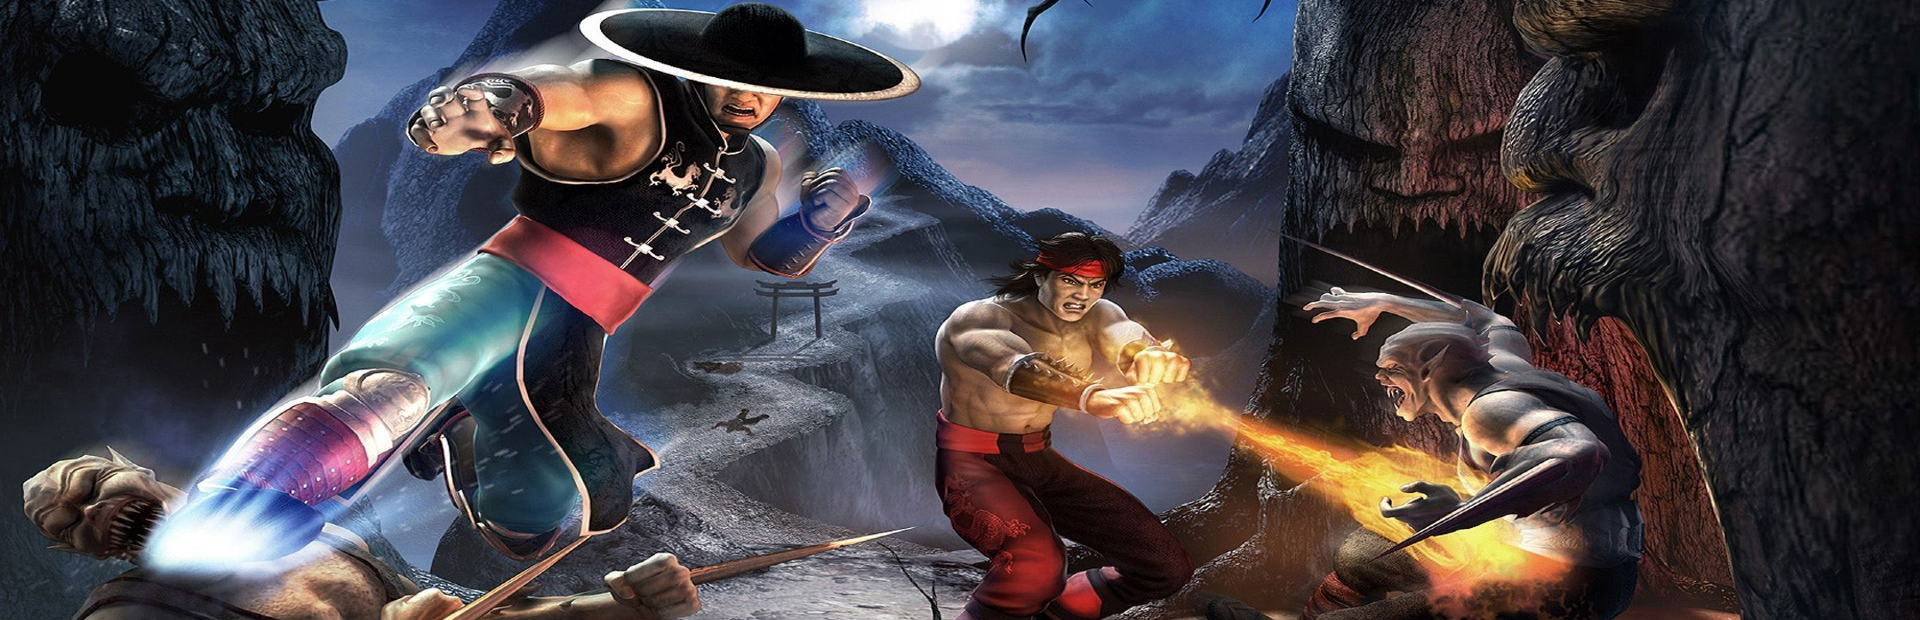 PS2] Mortal Kombat: Shaolin Monks v1.0